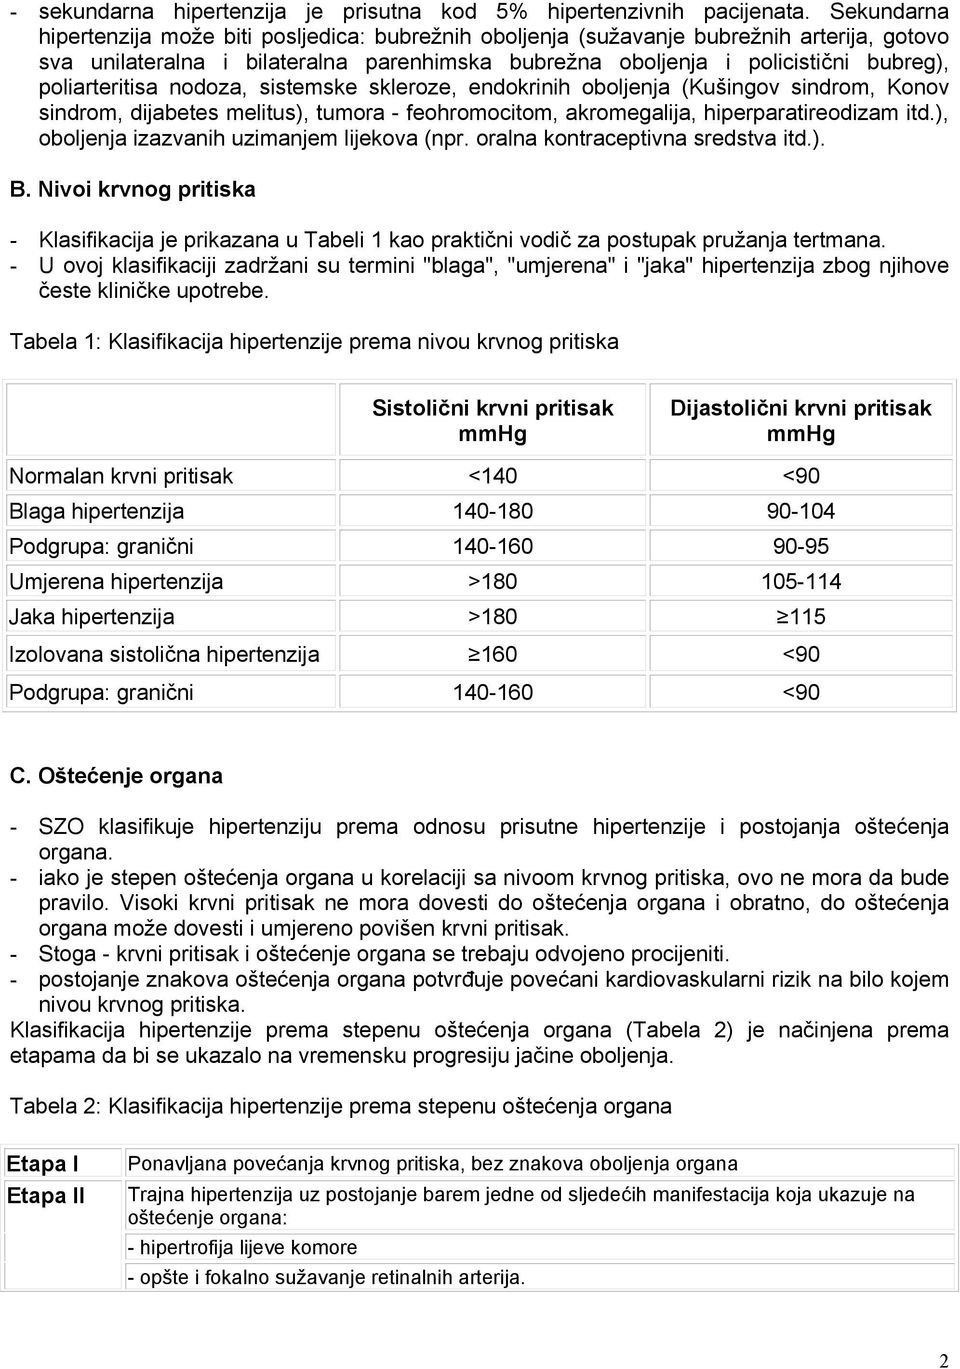 Liječenje hipertenzije / Hipertenzija (povišeni krvni tlak) / Centri A-Z - radiocasertanuova.com